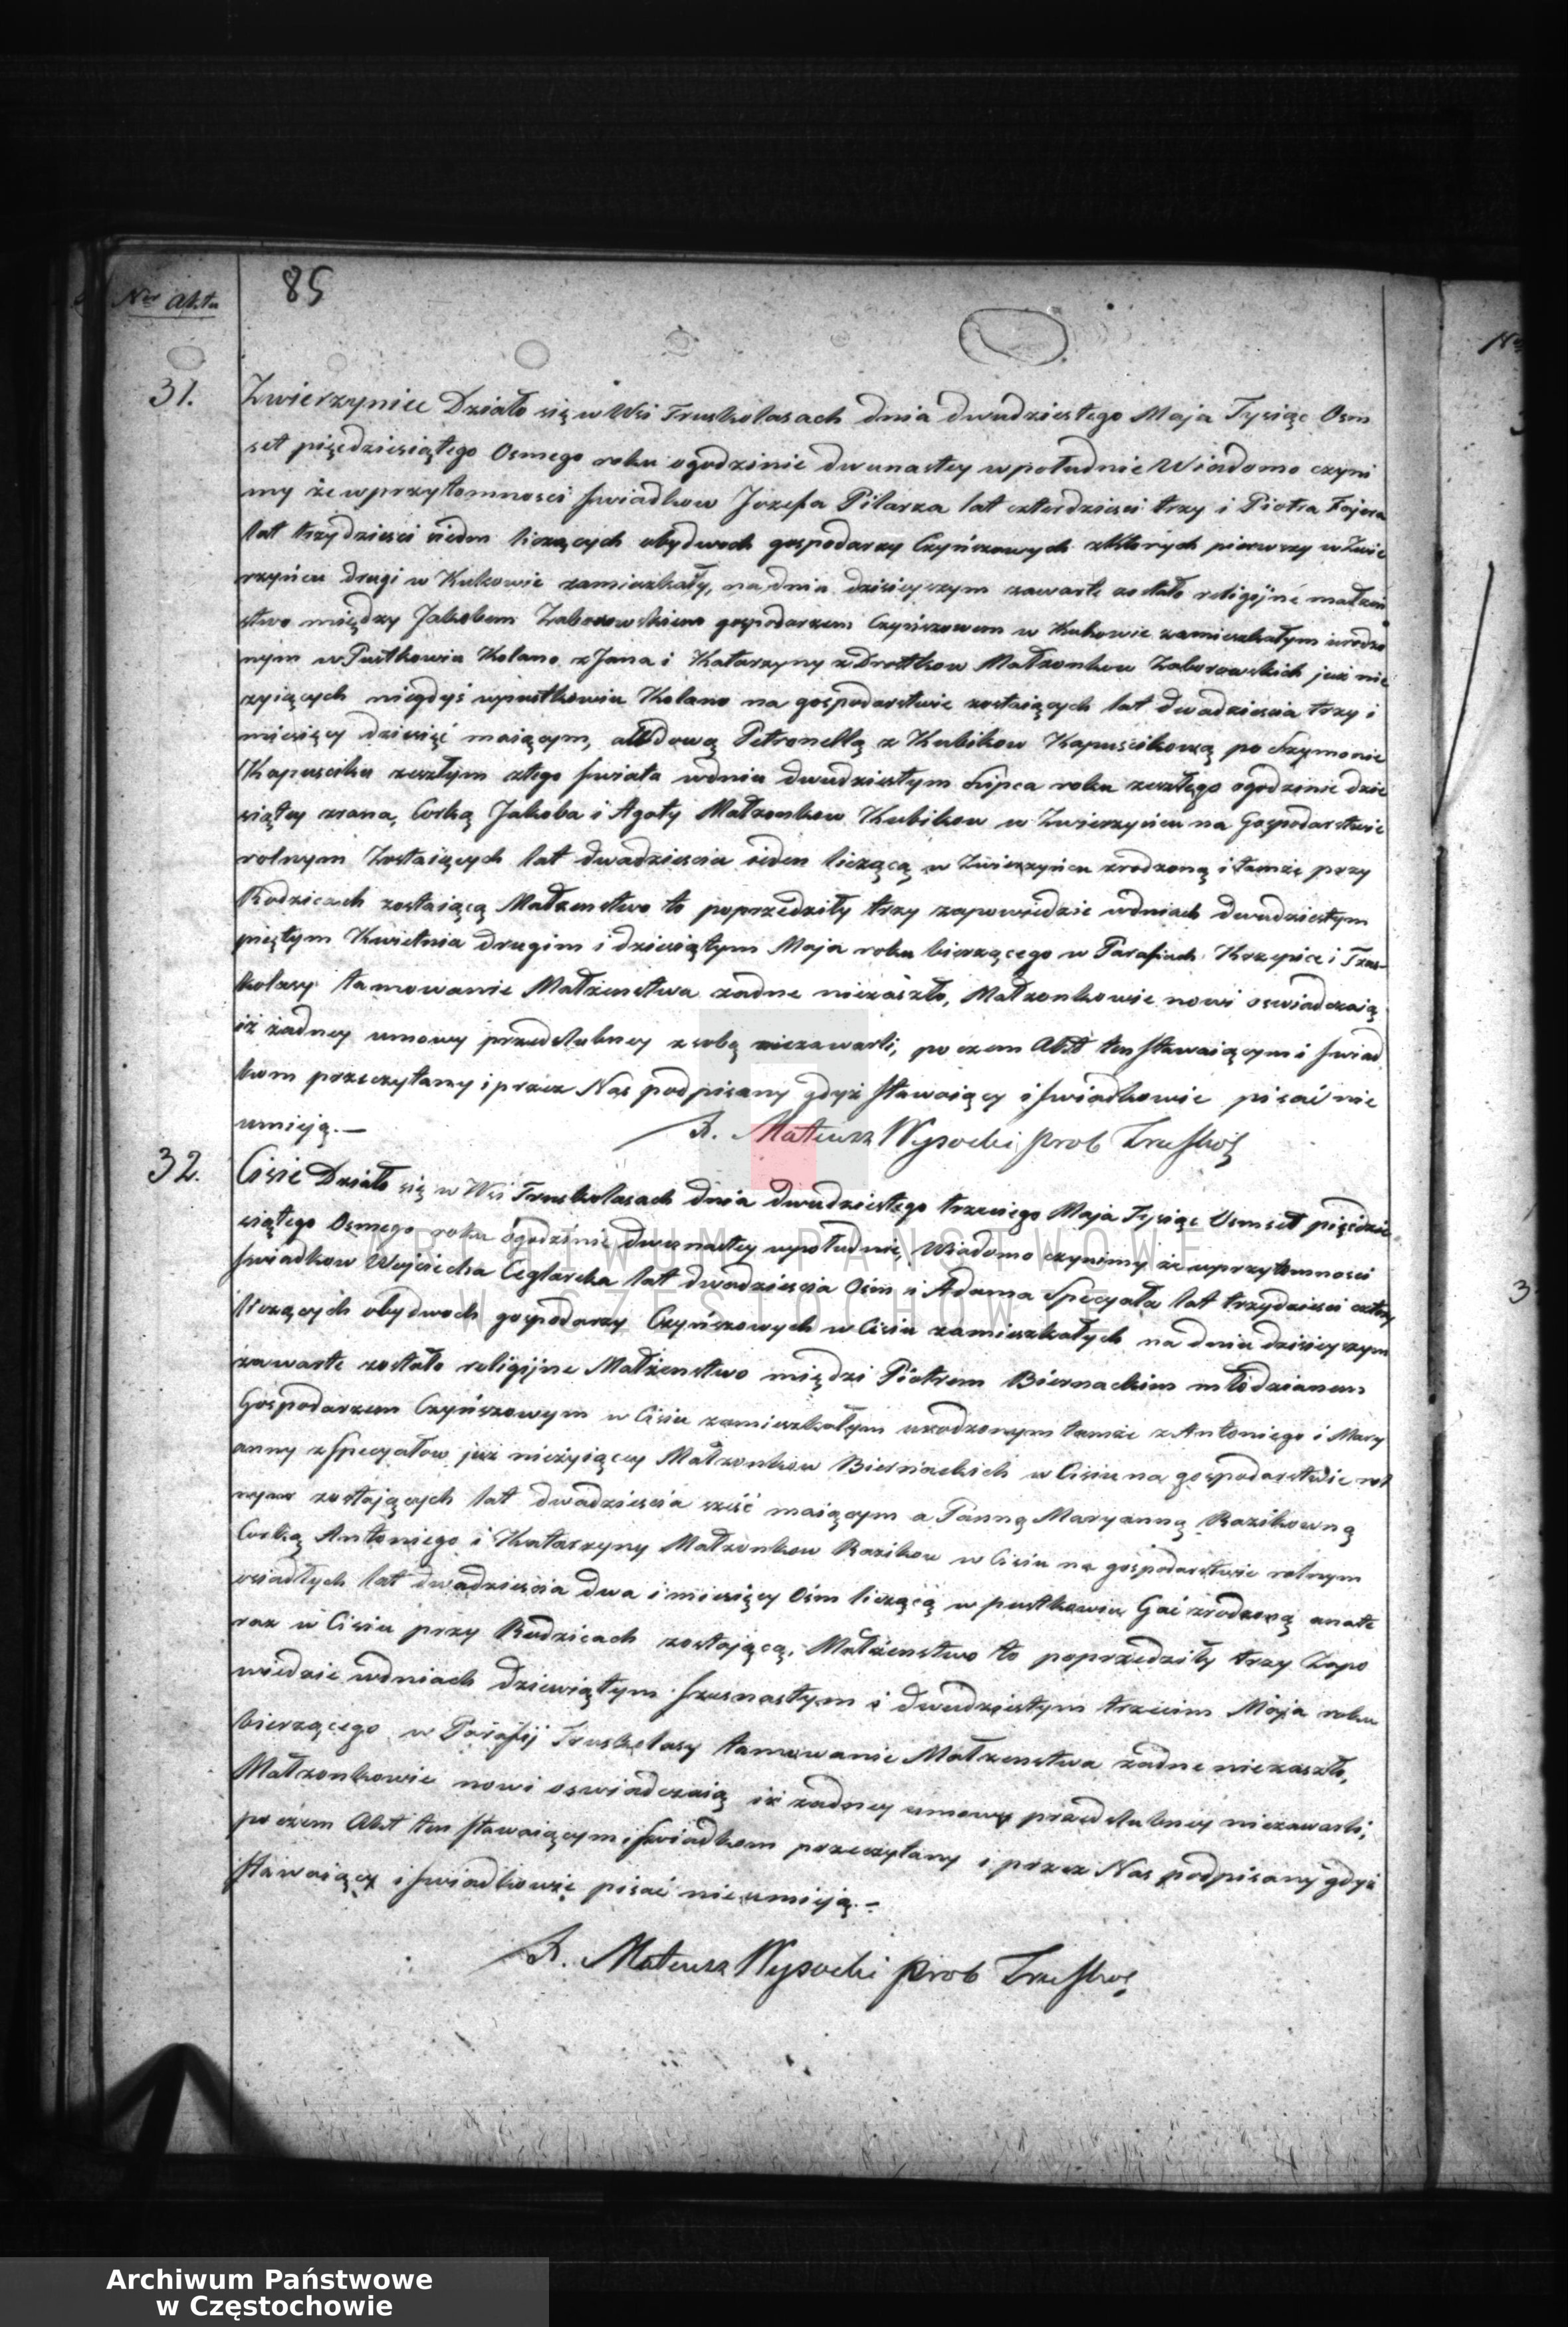 Skan z jednostki: Duplikaty akt urodzeń, małżeństw i zejścia Parafii Truskolasy z roku 1858